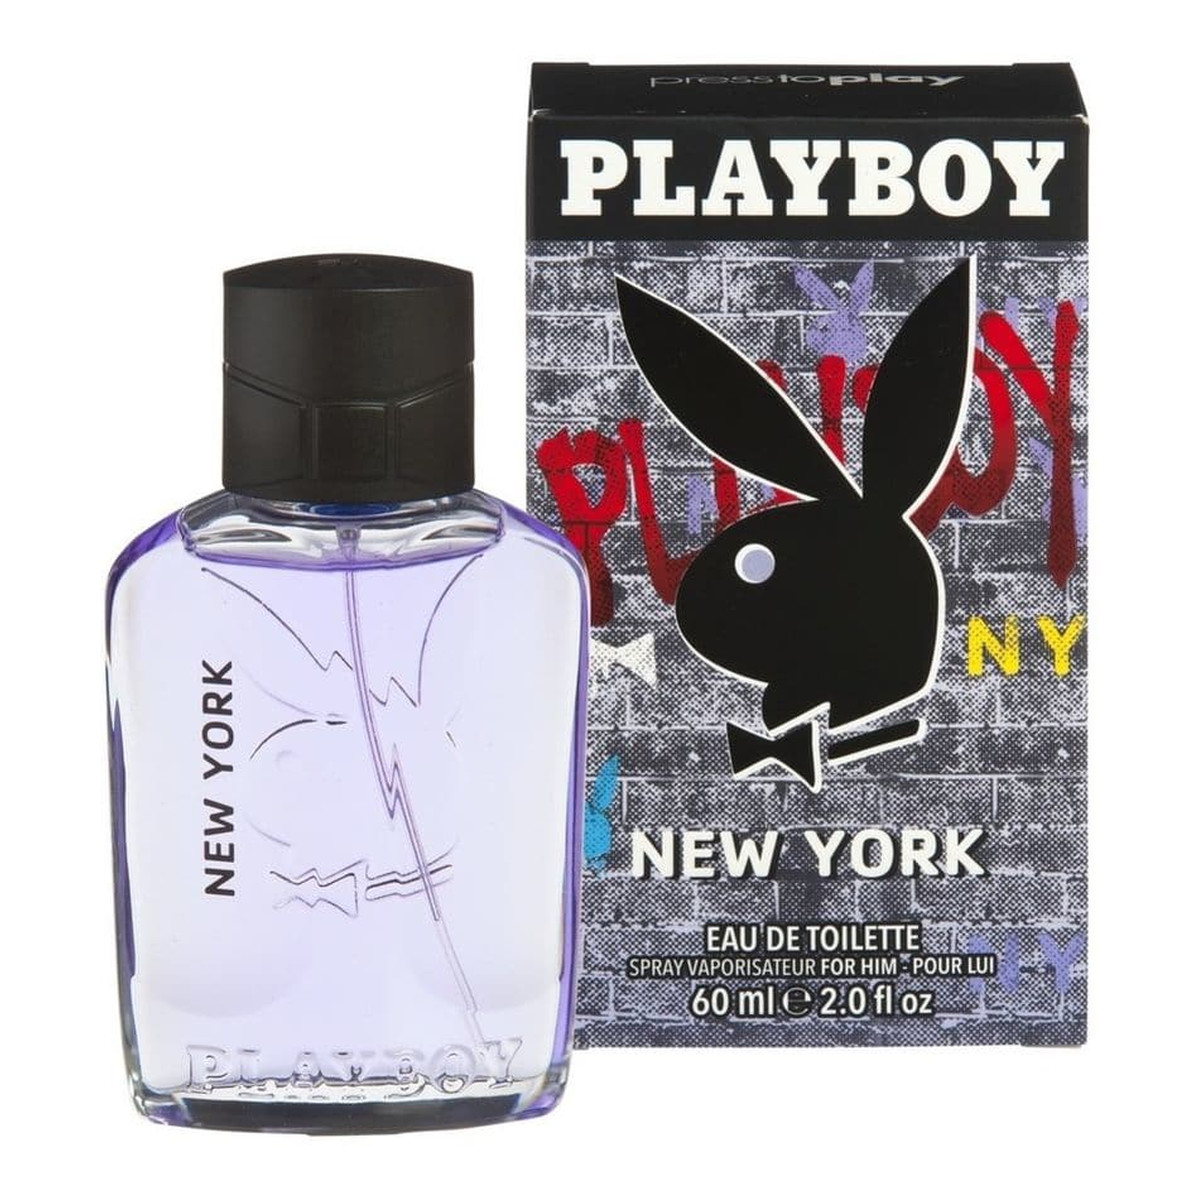 Playboy New York Woda toaletowa dla mężczyzn 60ml